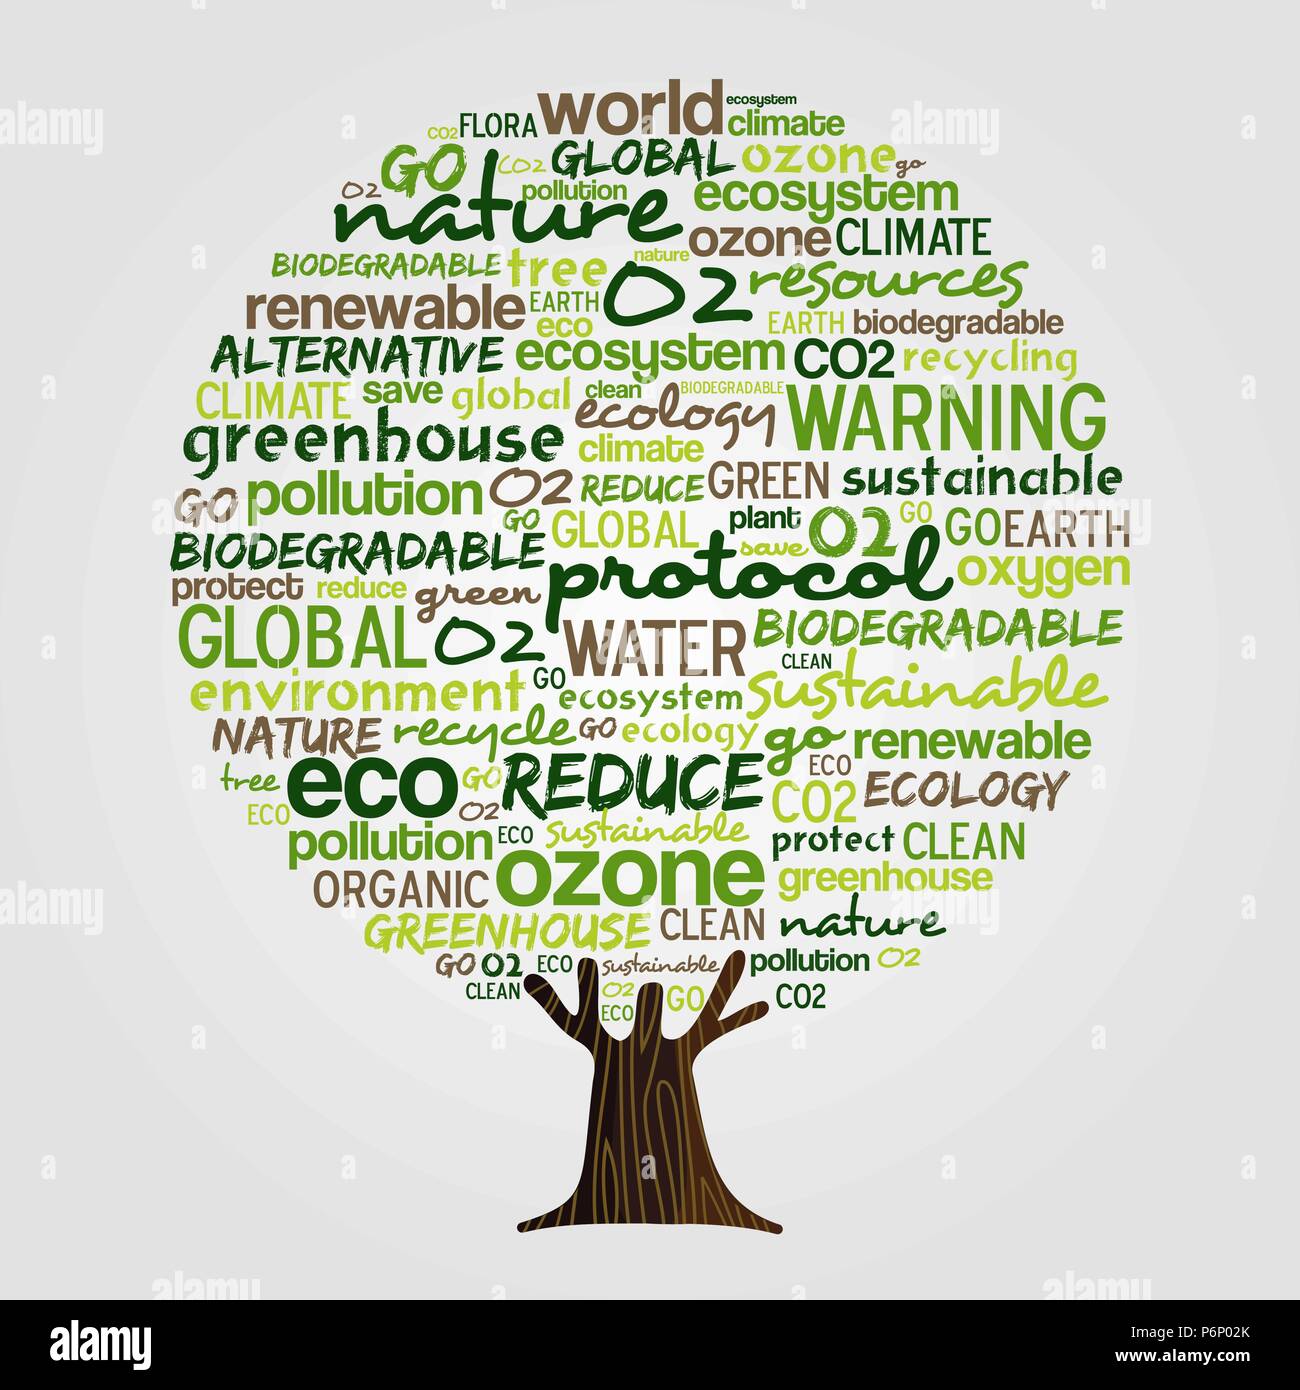 Baum aus umweltfreundlichen Typografie Anführungszeichen, grünes Konzept denken. Umwelt helfen Abbildung mit leistungsstarken Erde Erhaltung Worte. EPS 10 Vektor. Stock Vektor